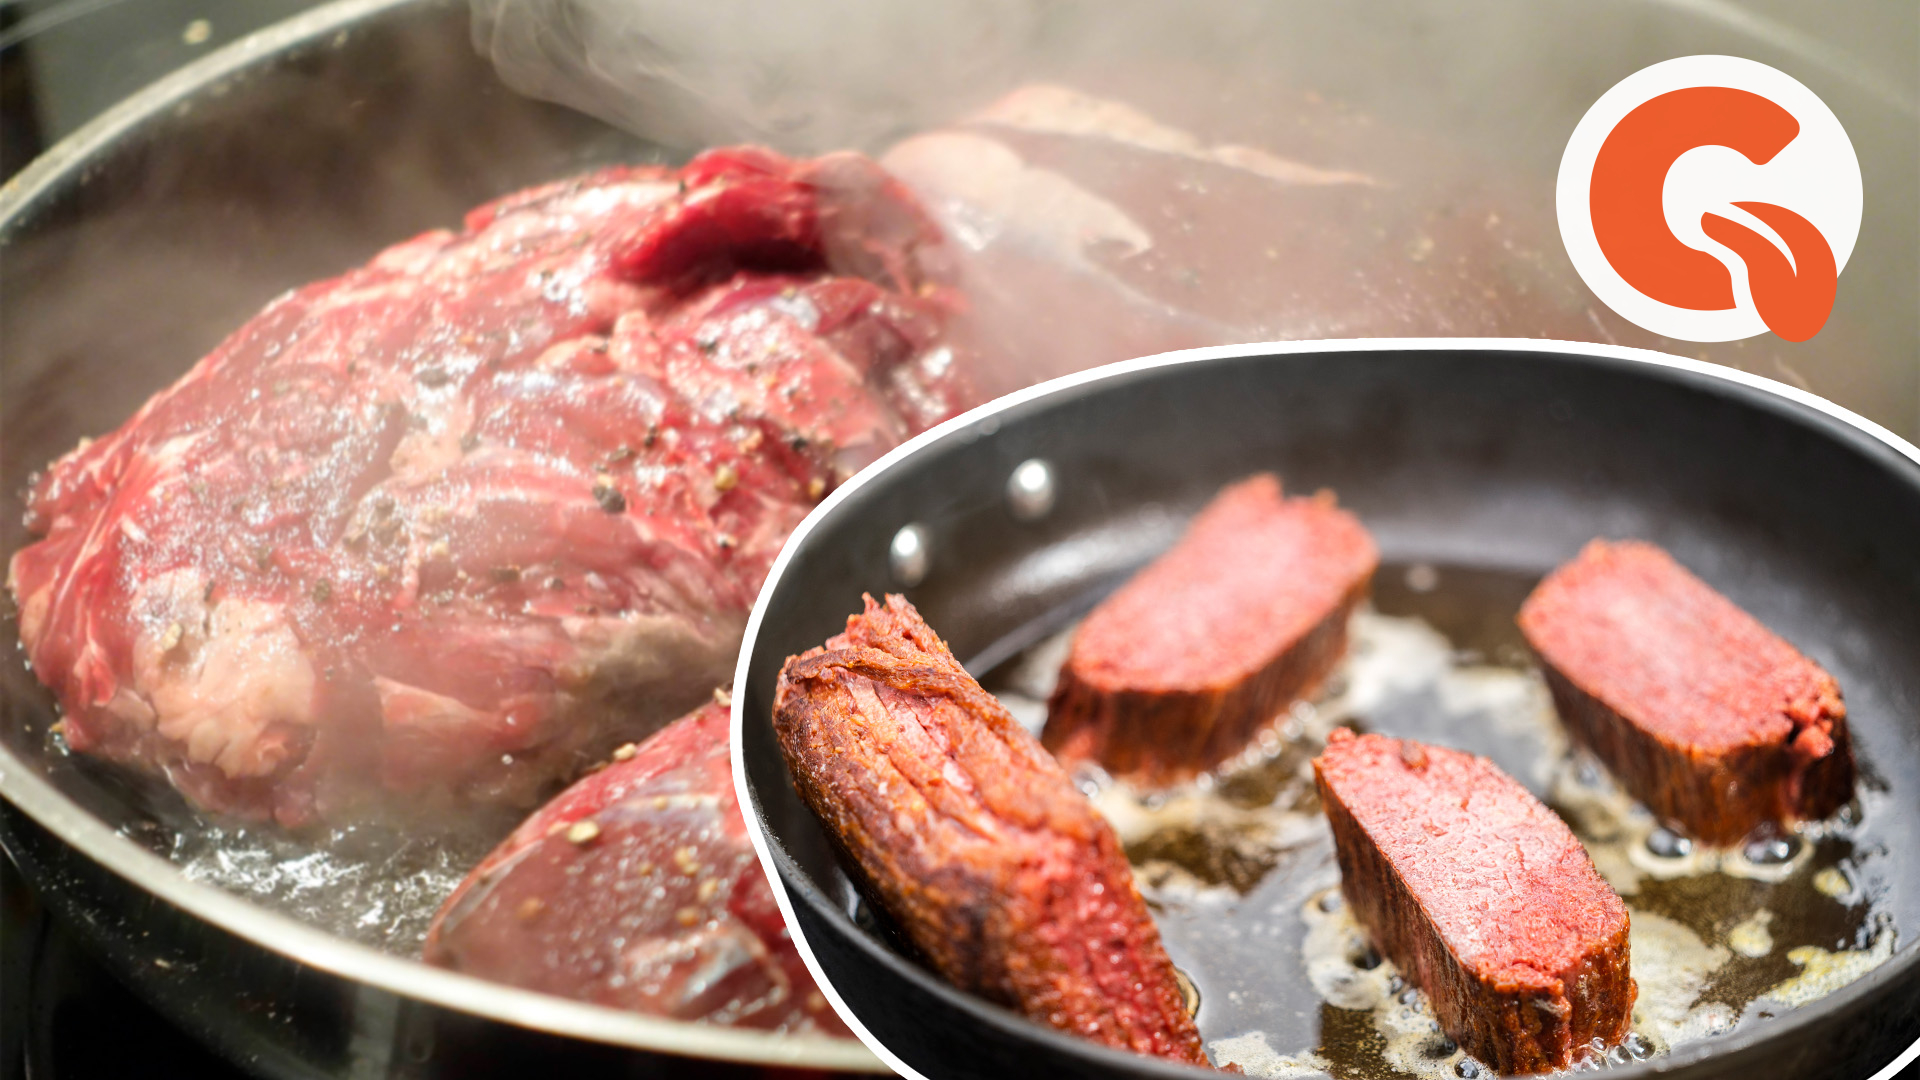 Причина пенистости мяса при жарке и способы ее предотвращения - советы от экспертов